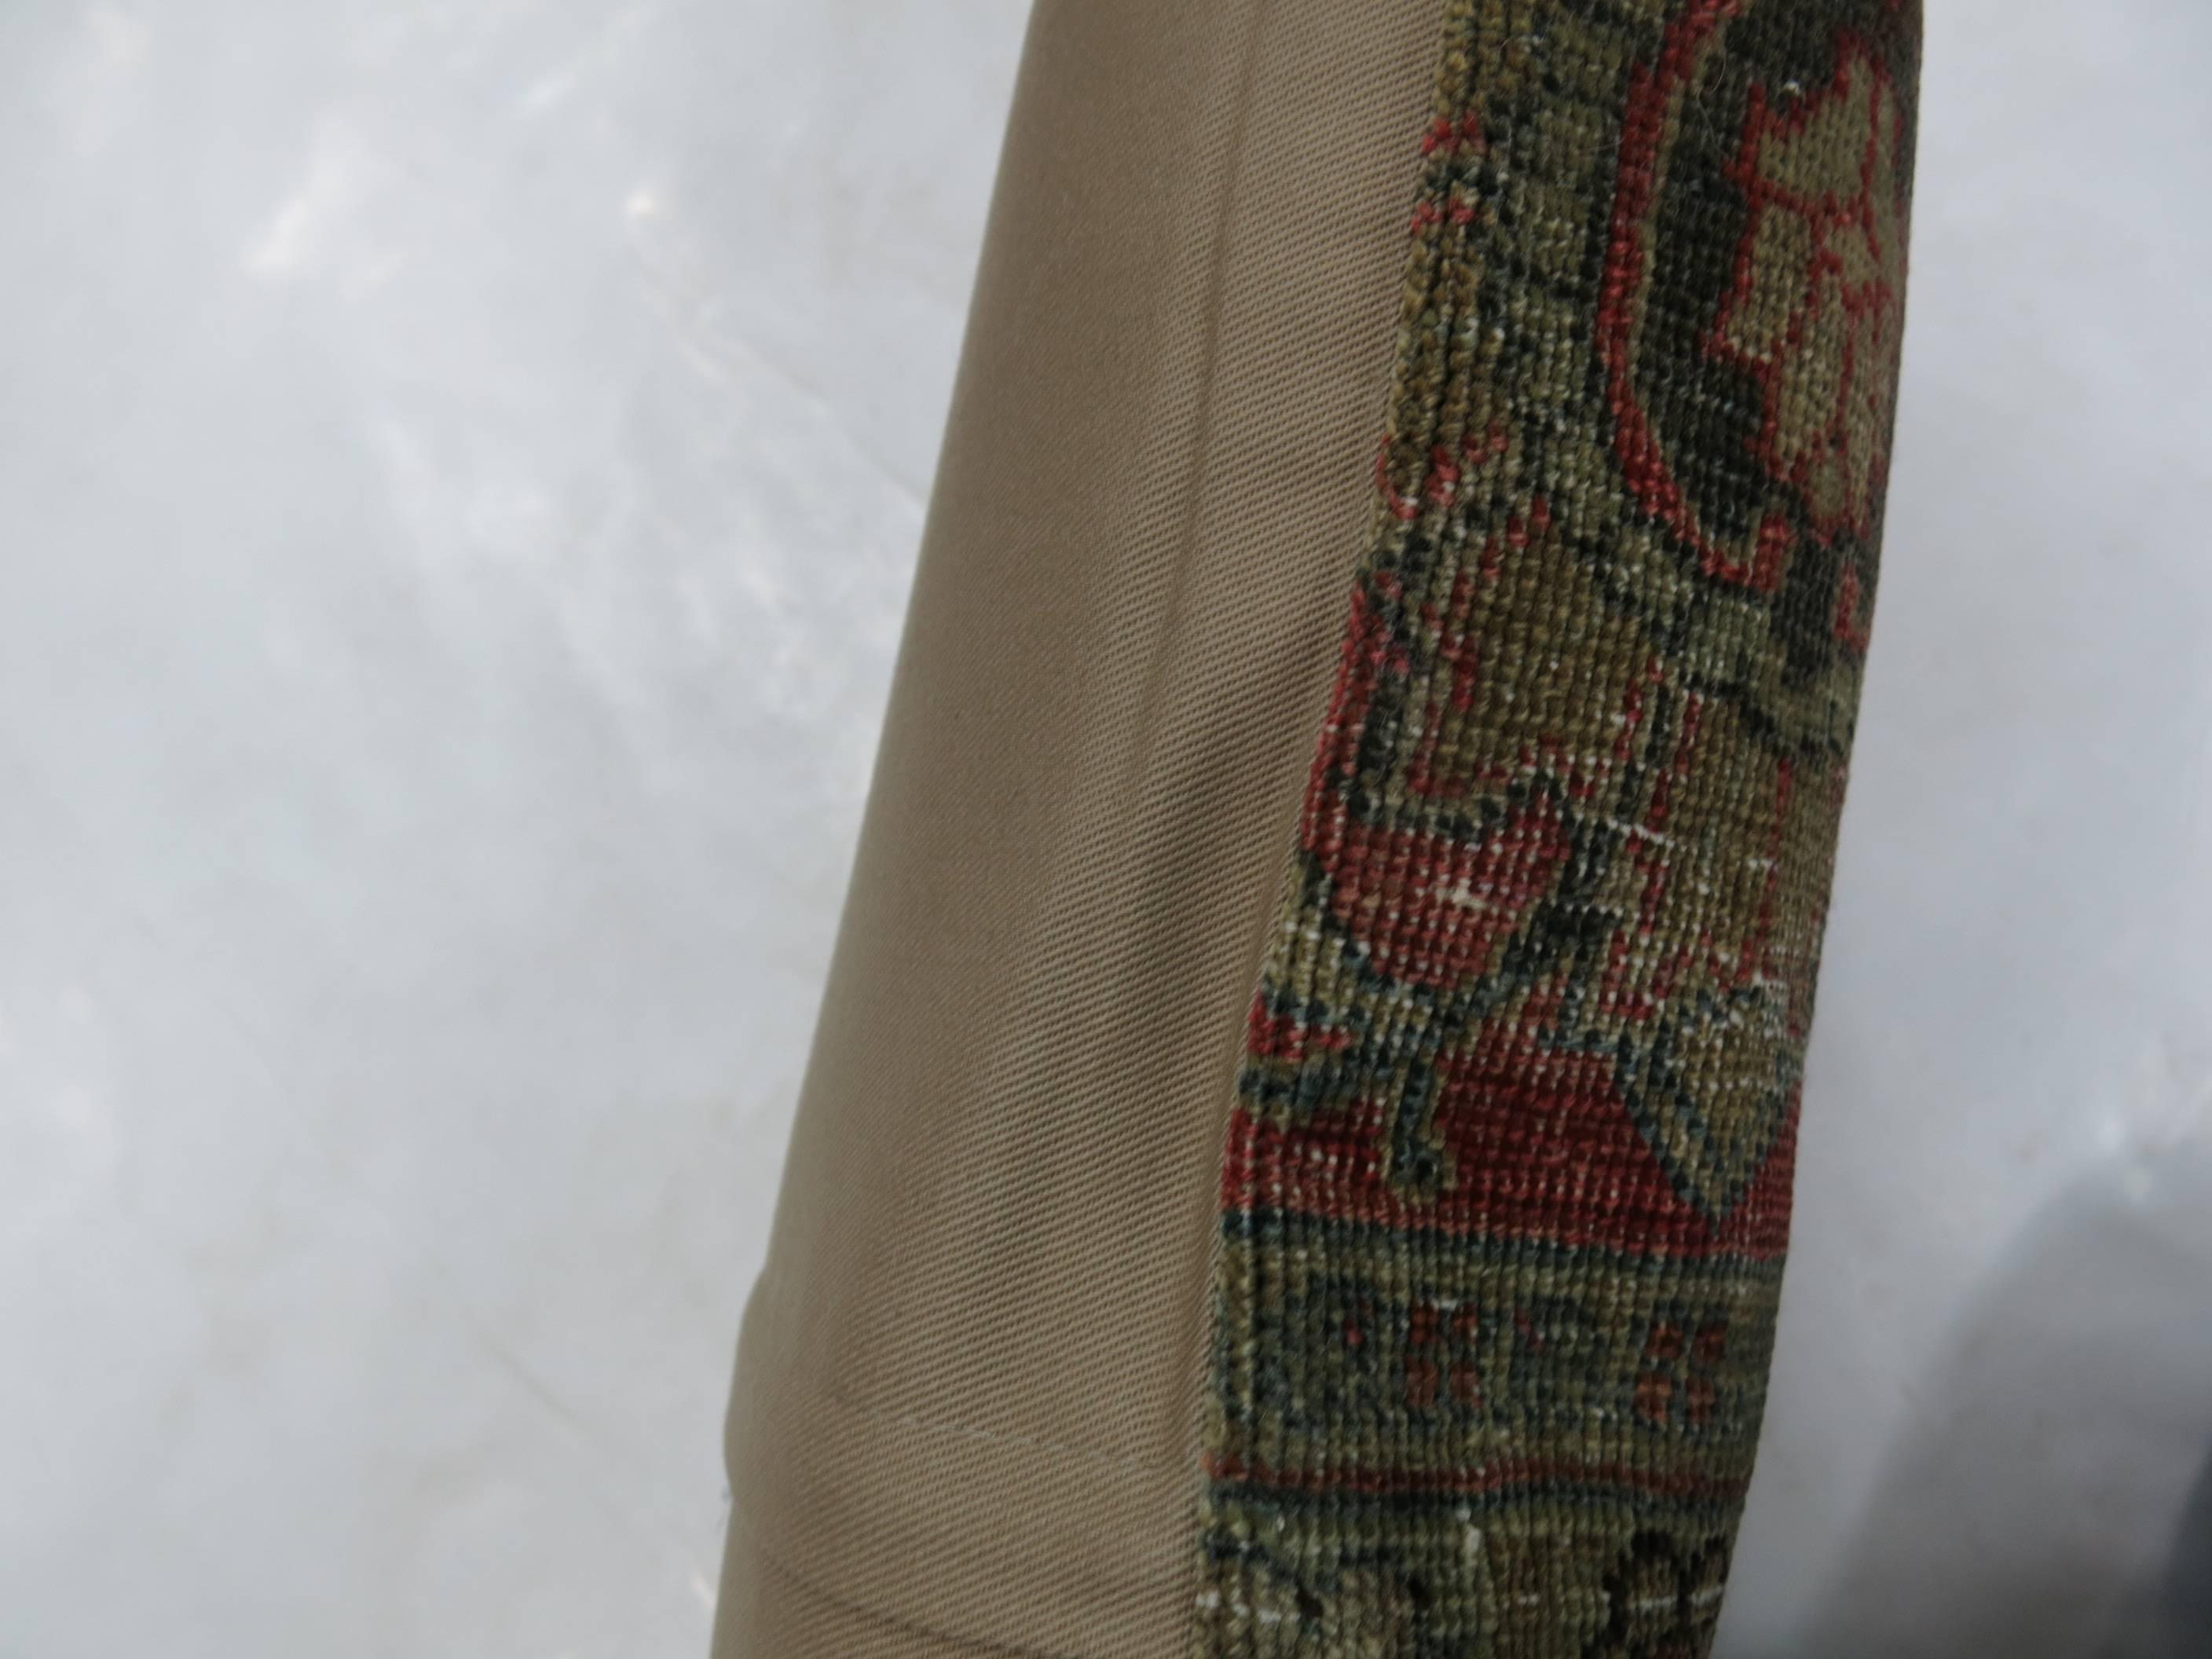 Coussin lombaire fabriqué à partir d'un tapis persan Tabriz

Mesures : 15'' x 21''.